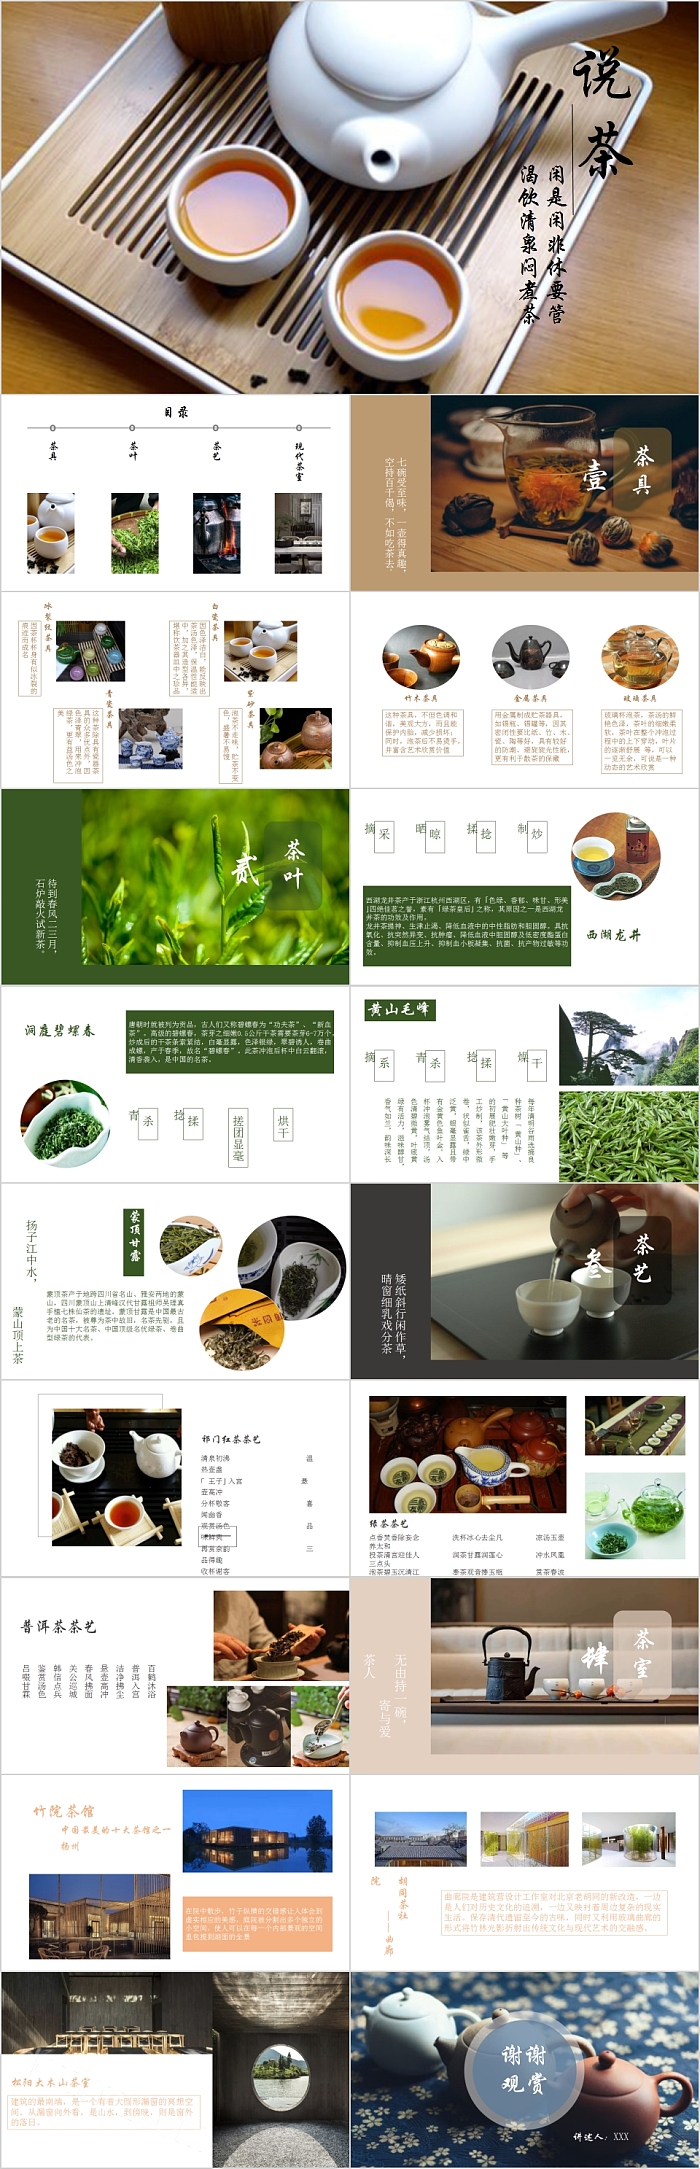 中国风茶文化说茶PPT模板